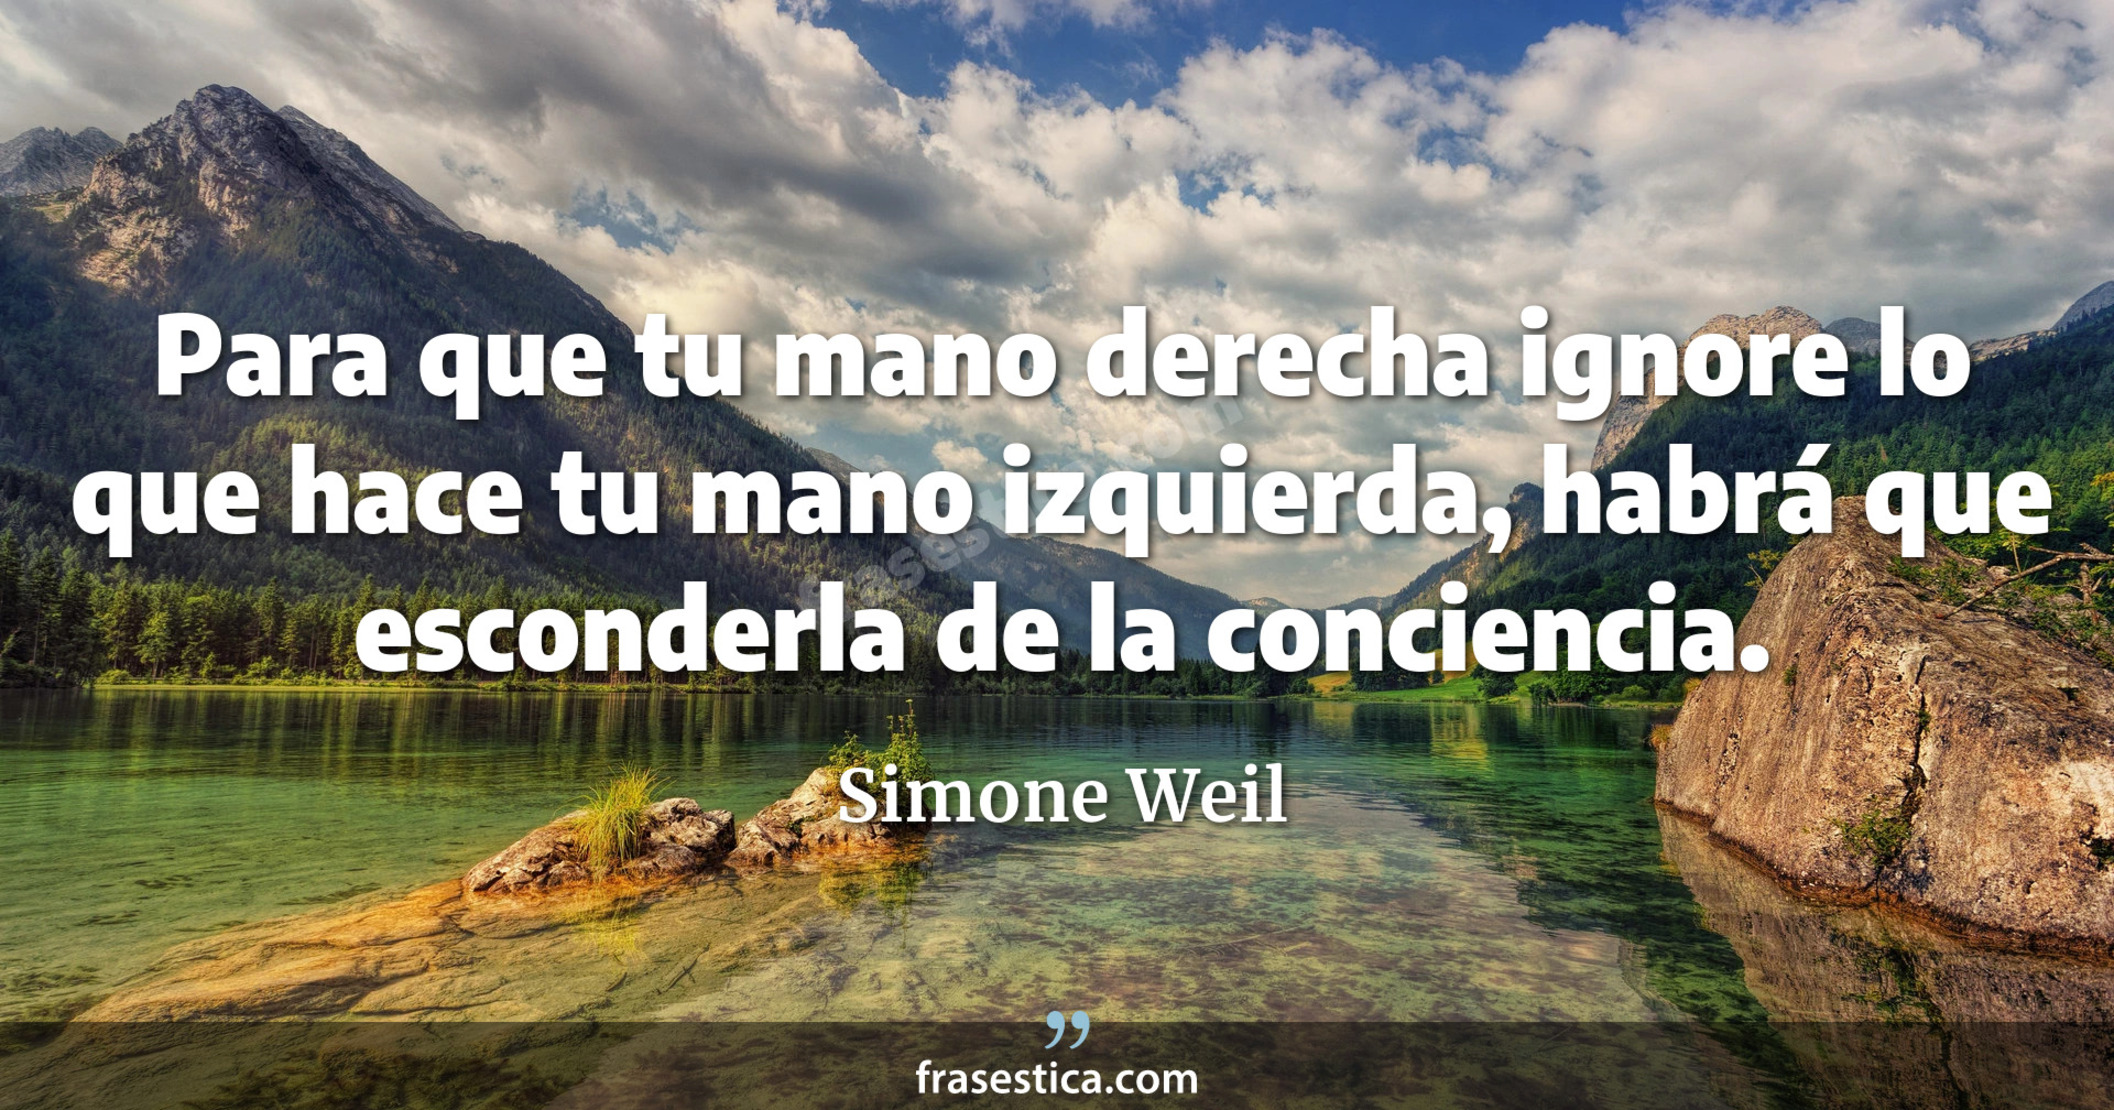 Para que tu mano derecha ignore lo que hace tu mano izquierda, habrá que esconderla de la conciencia. - Simone Weil